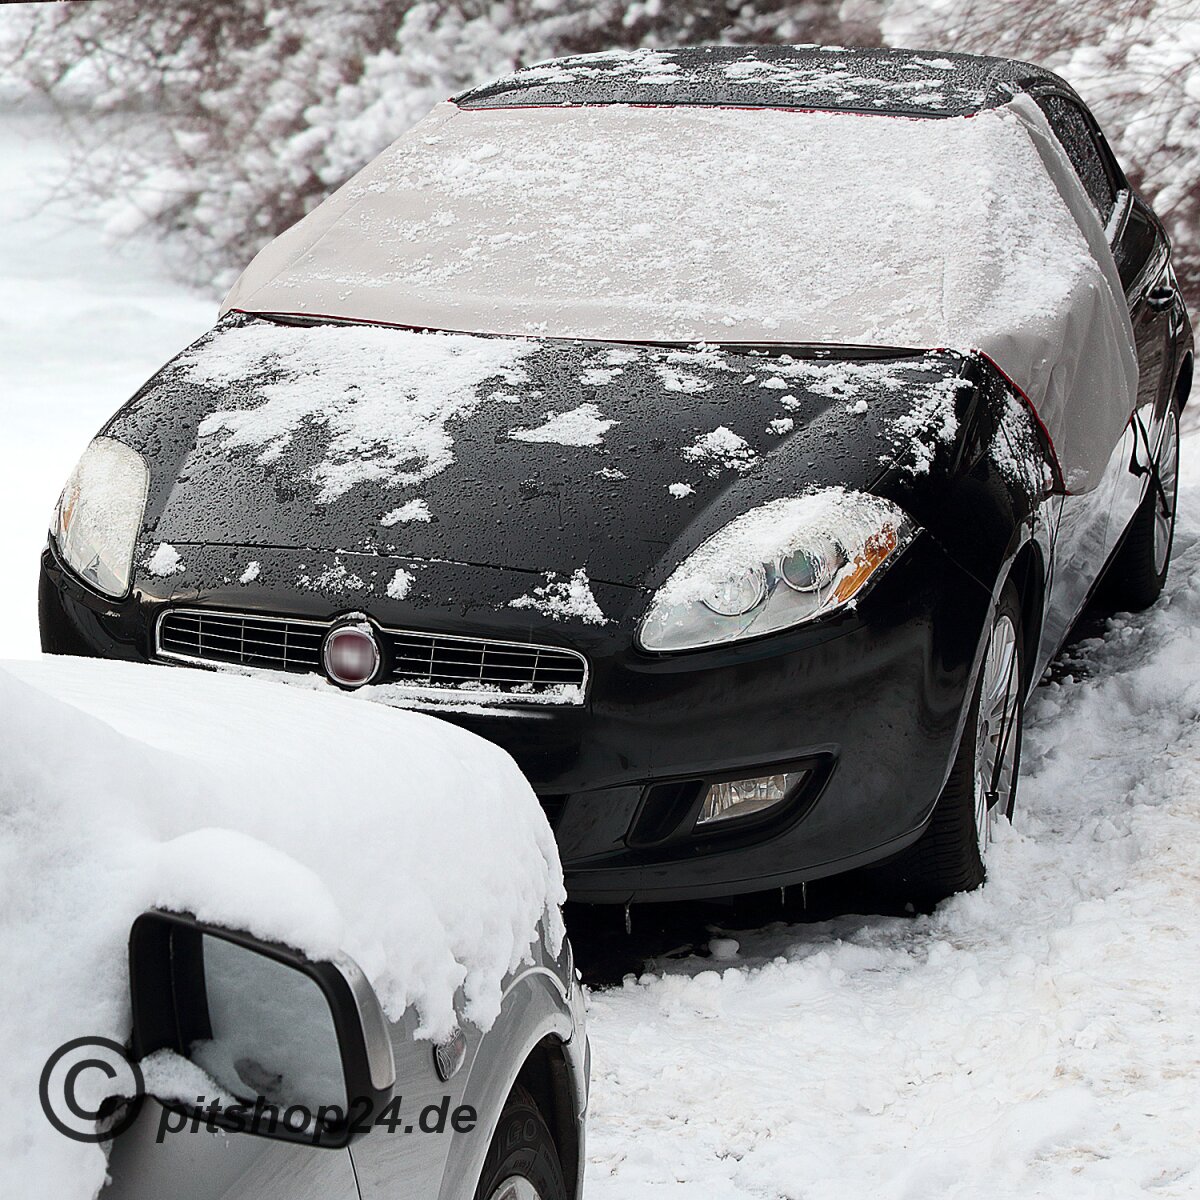 Autoabdeckung gegen Frost? - Startseite Forum Wissen